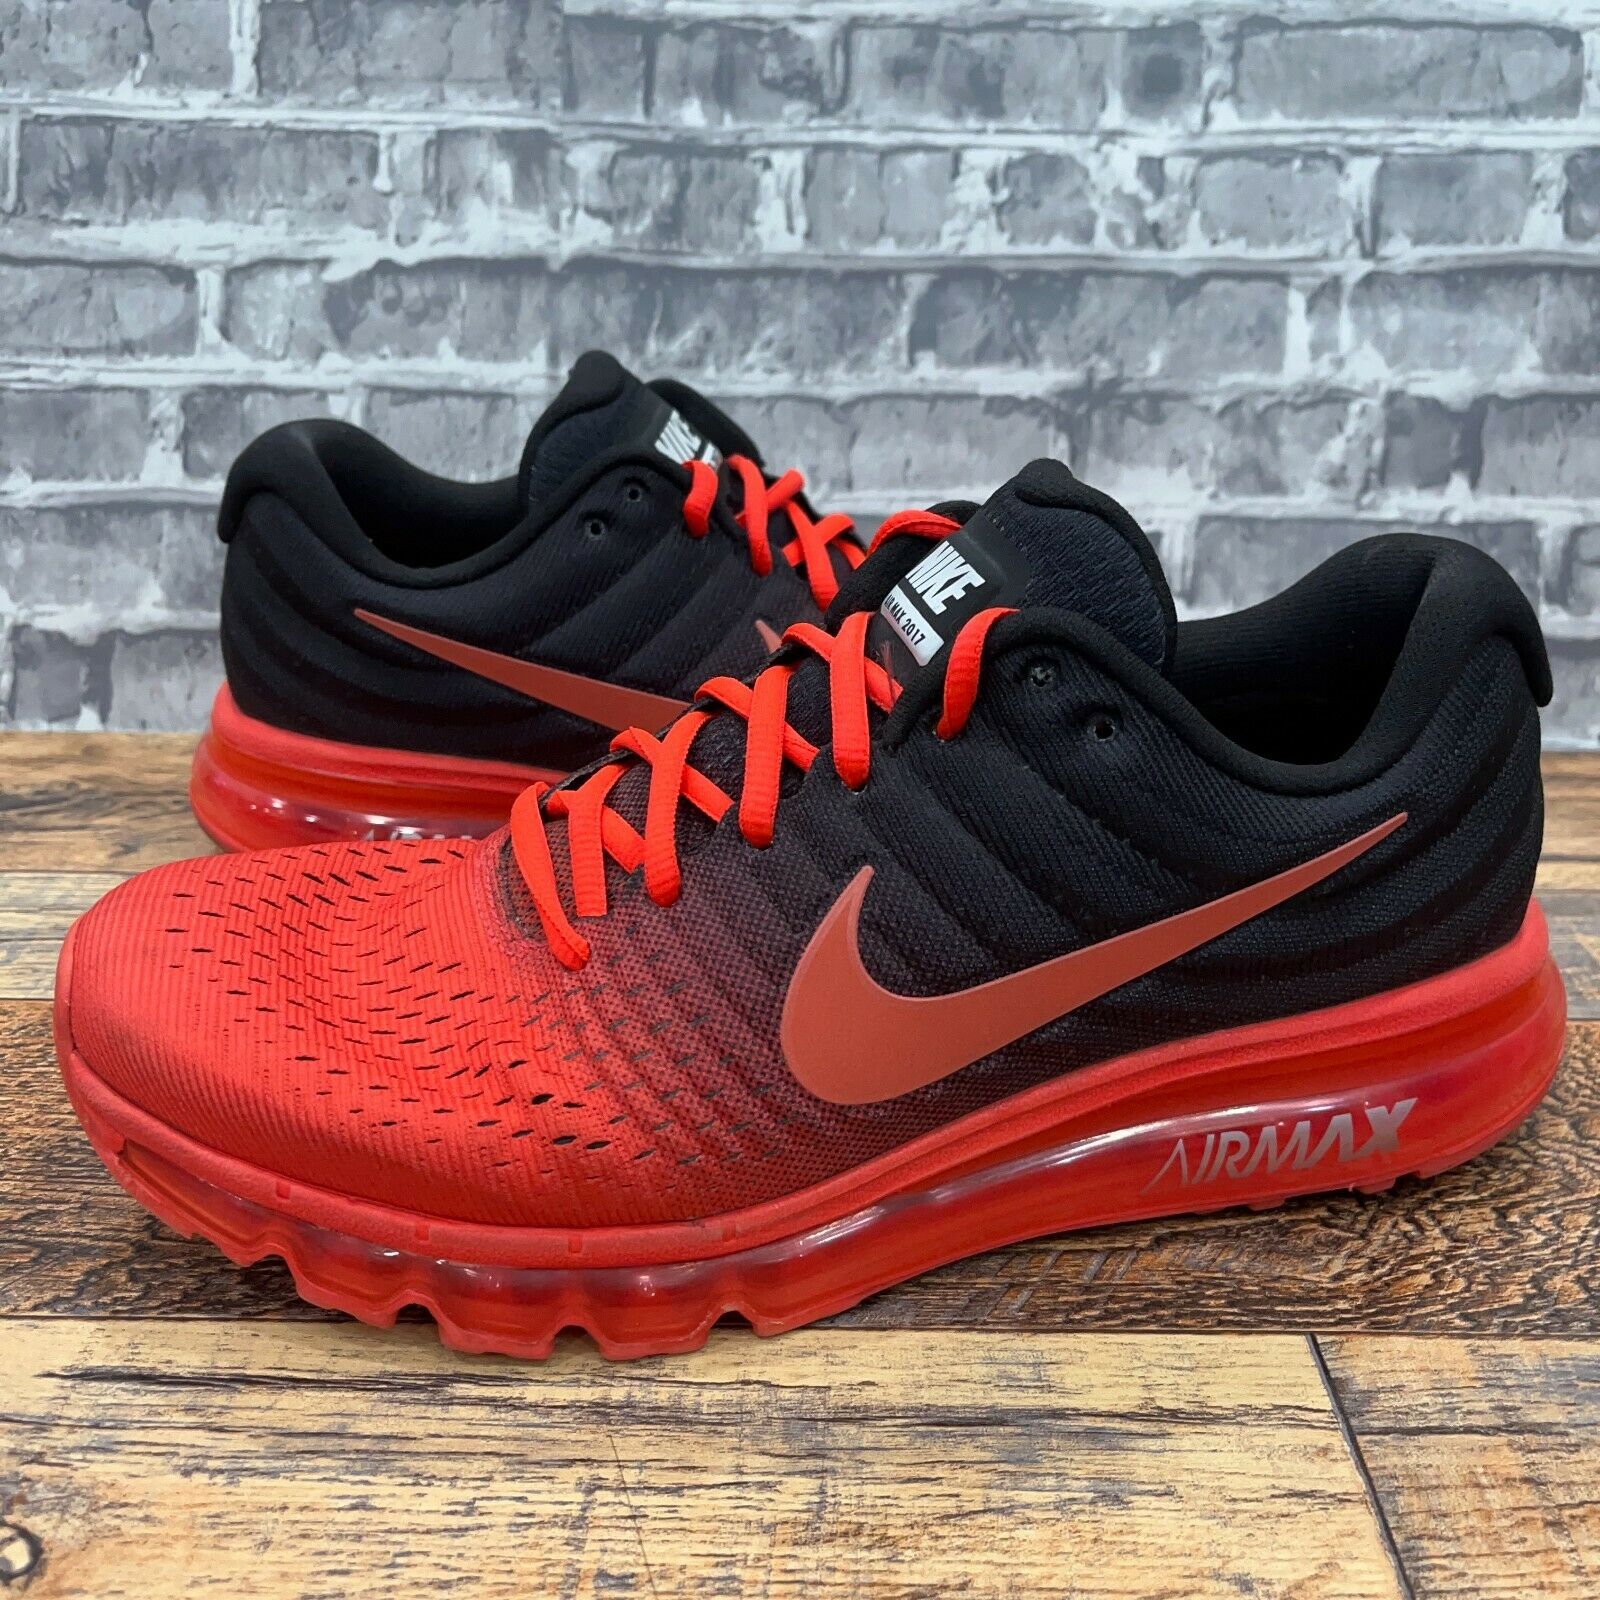 Nike Air Max 2017 Bright Crimson Running Casual Shoes Mens sz 10 849559-600